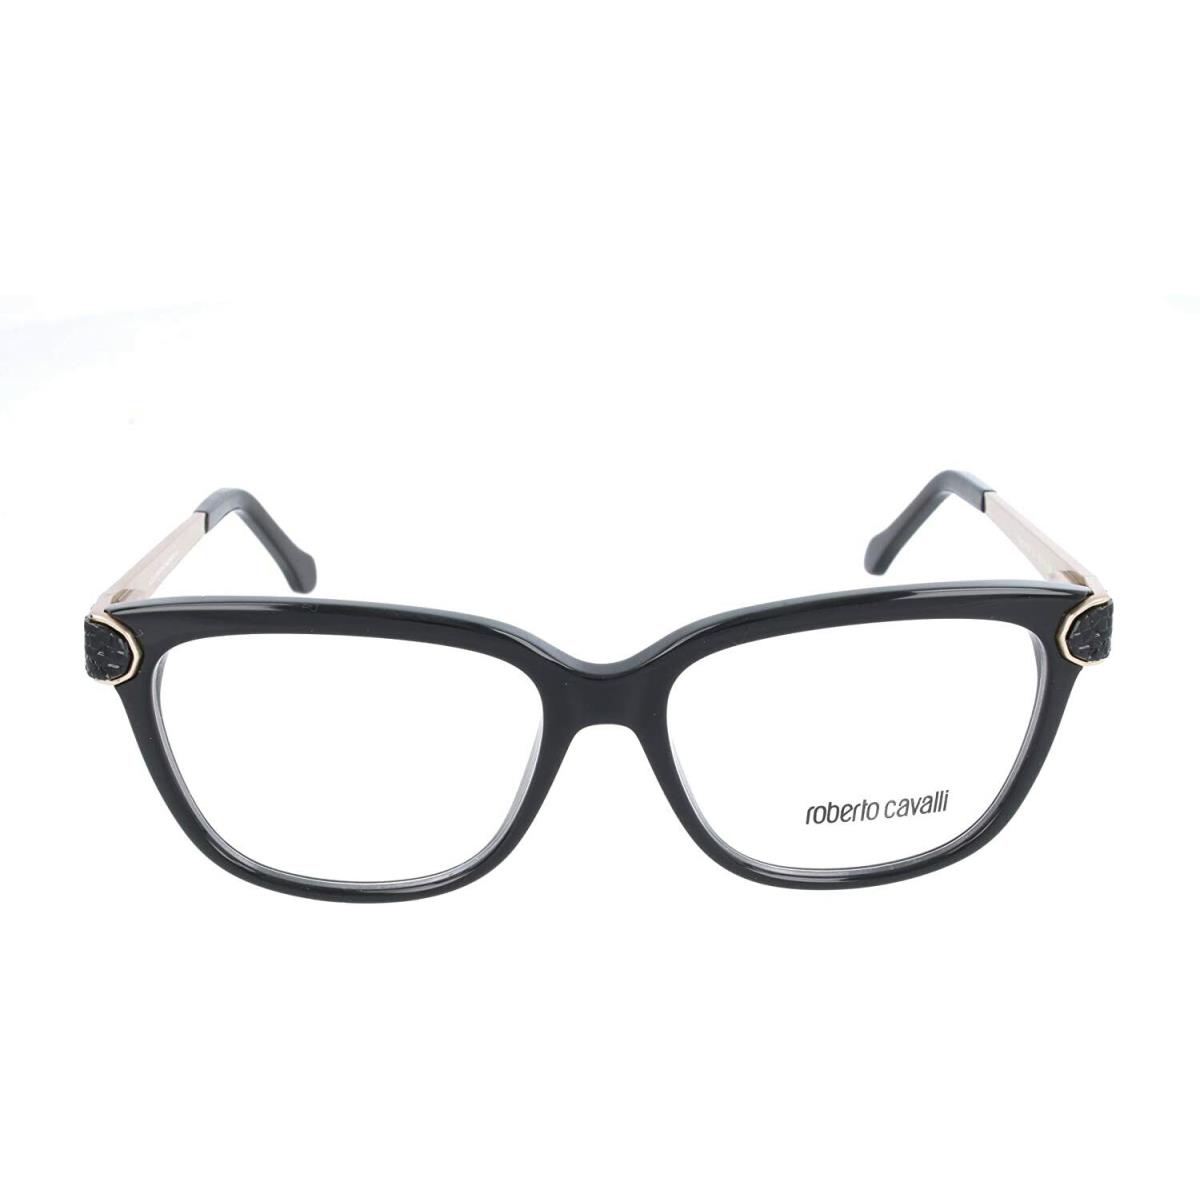 Roberto Cavalli Polaris RC934 RC0934 001 Black Gold Eyeglasses Frame 53-15-135